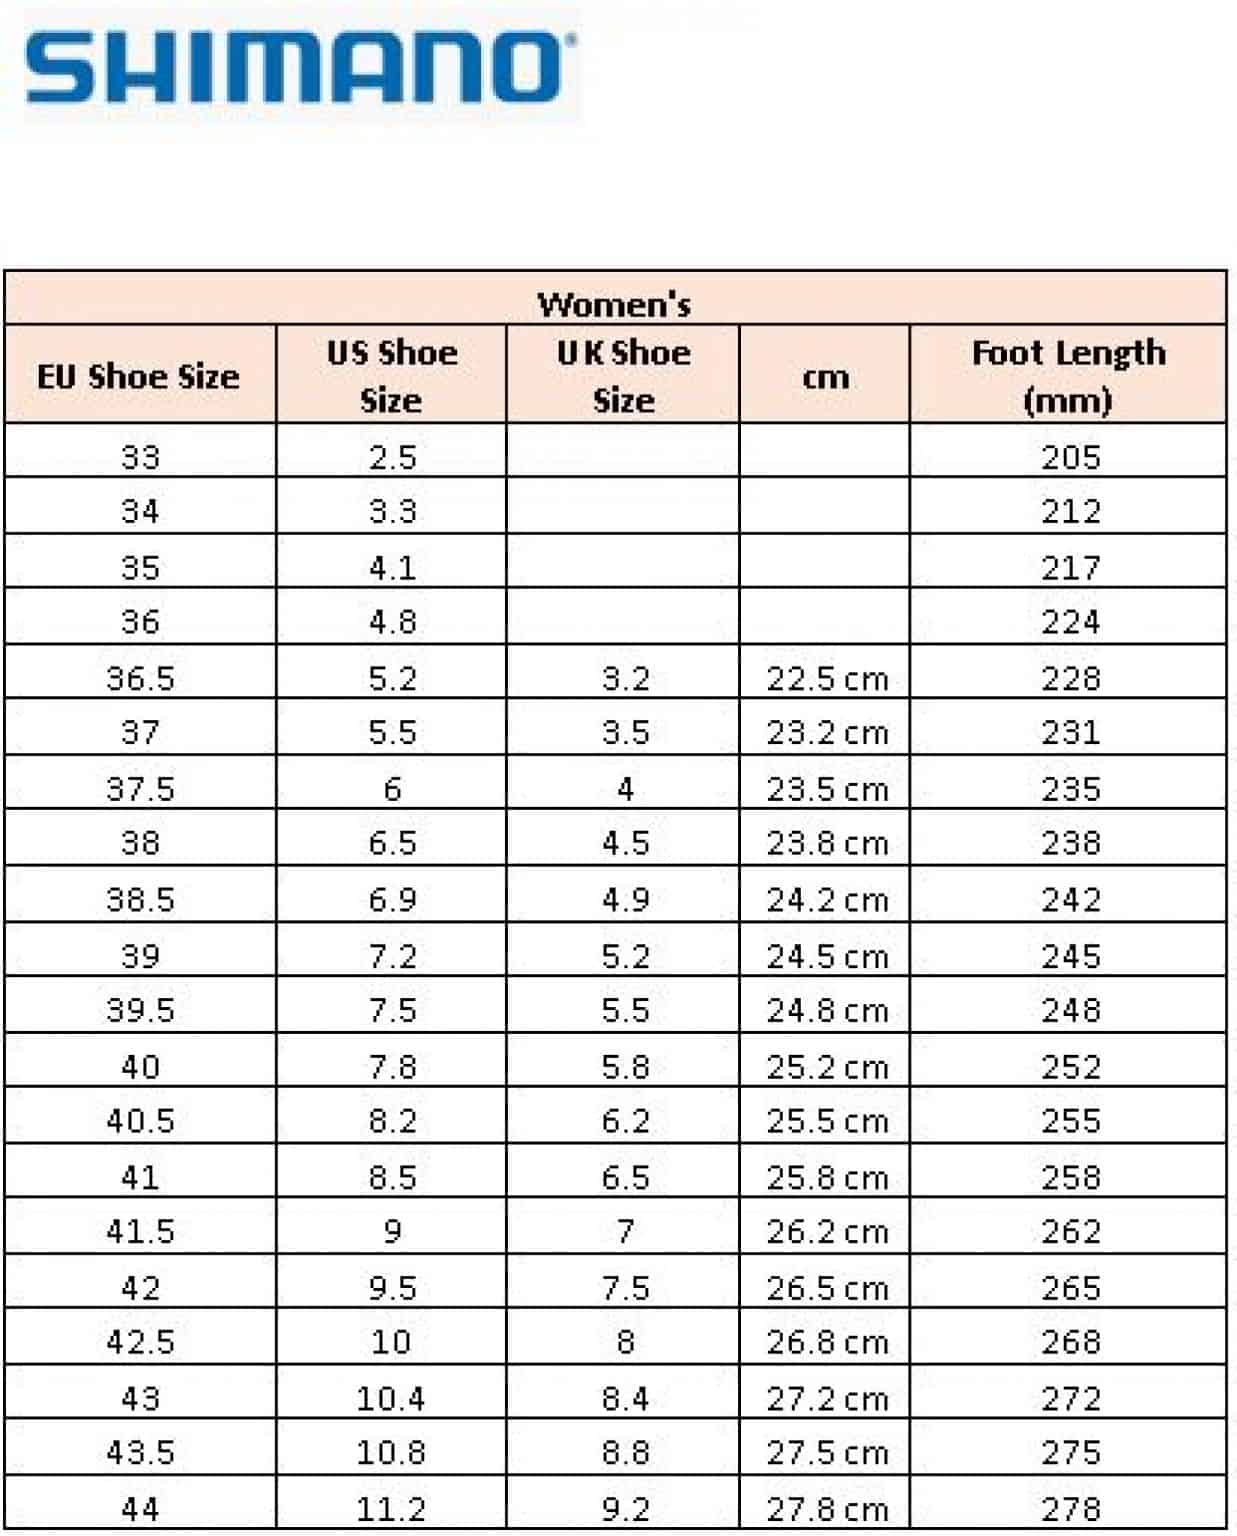 Shimano Cycling Shoes Size Chart (for both Men & Women)